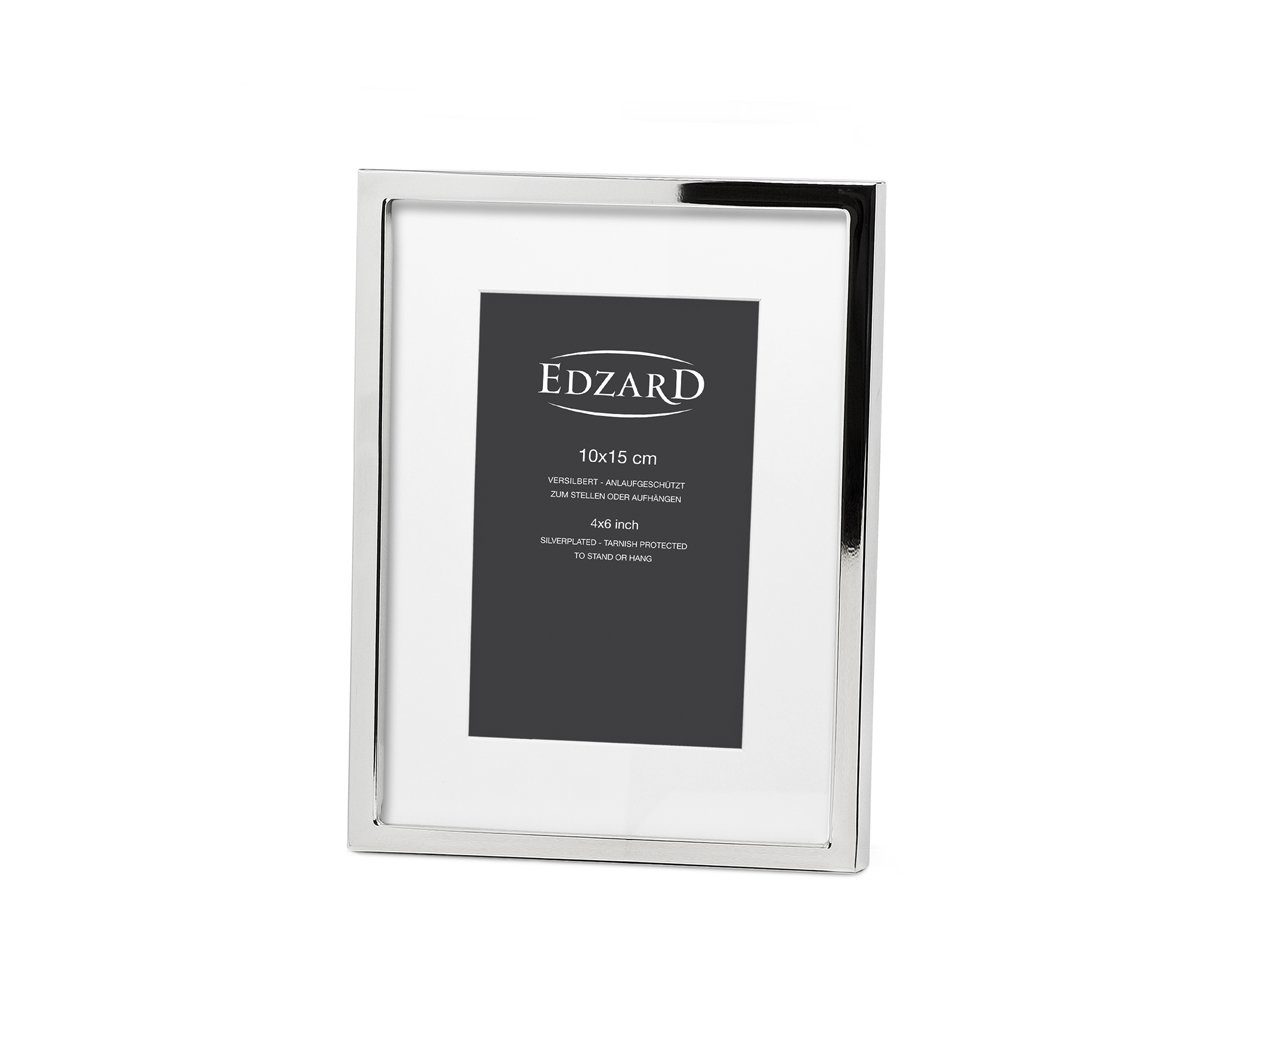 EDZARD Bilderrahmen Rivoli, versilbert und anlaufgeschützt, für 10x15 cm Foto - Fotorahmen, Rahmen für Foto zum Hinstellen und Aufhängen